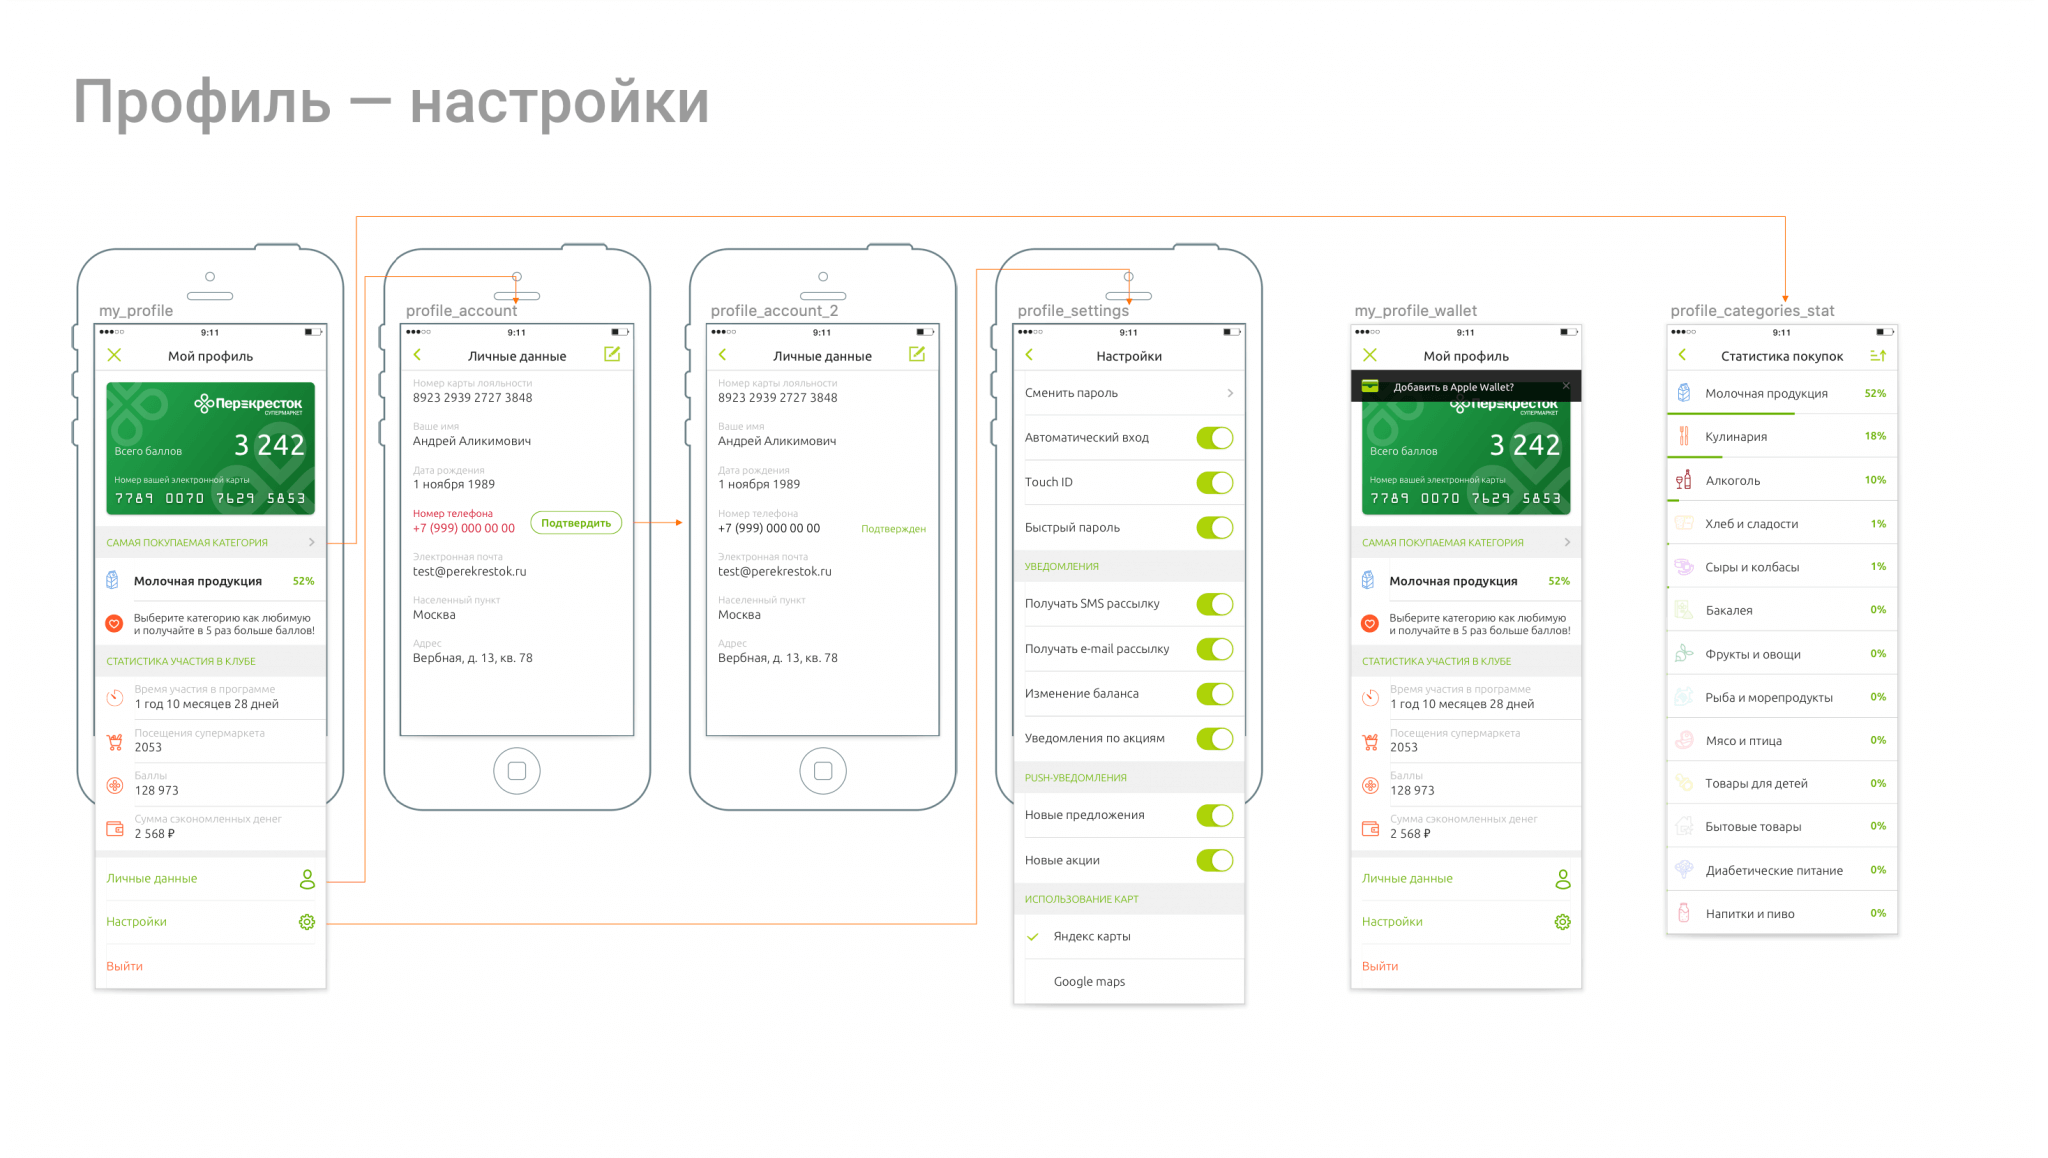 screen flow, in russian